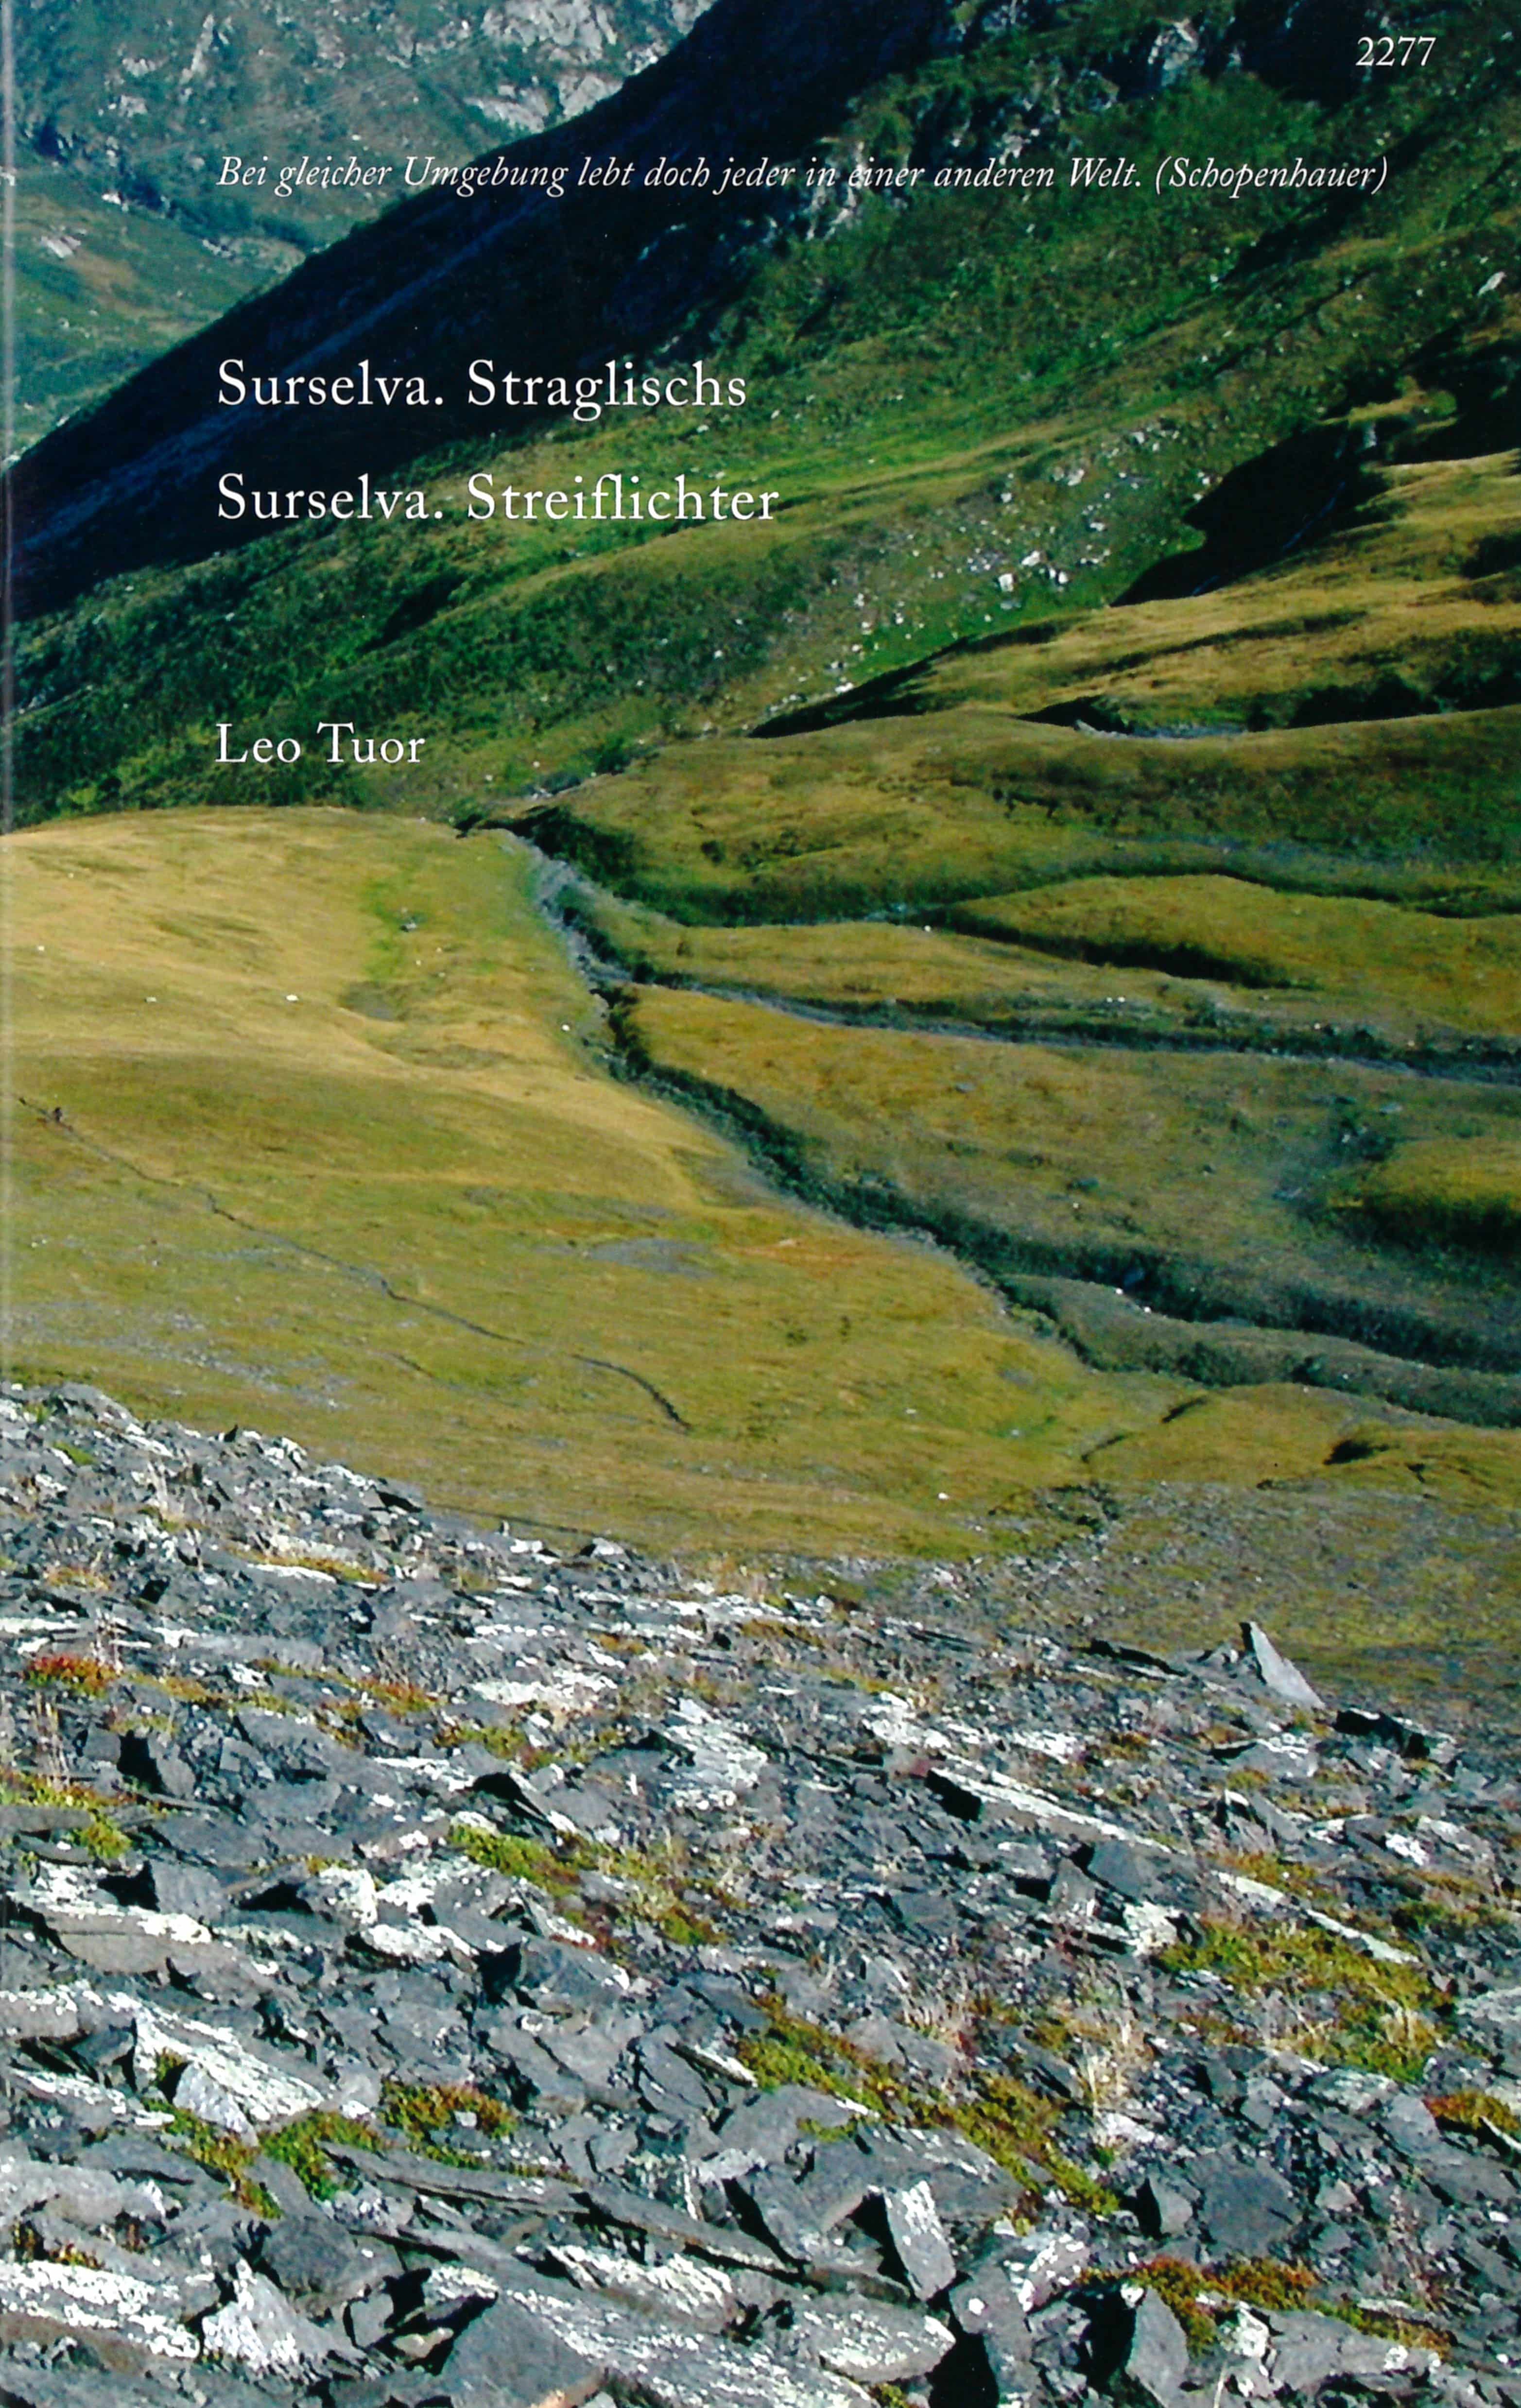 Surselva. Straglischs / Surselva. Streiflichter, ein Buch von Leo Tuor und Lucia Degonda, SJW, Natur, zweisprachig, Sursilvan